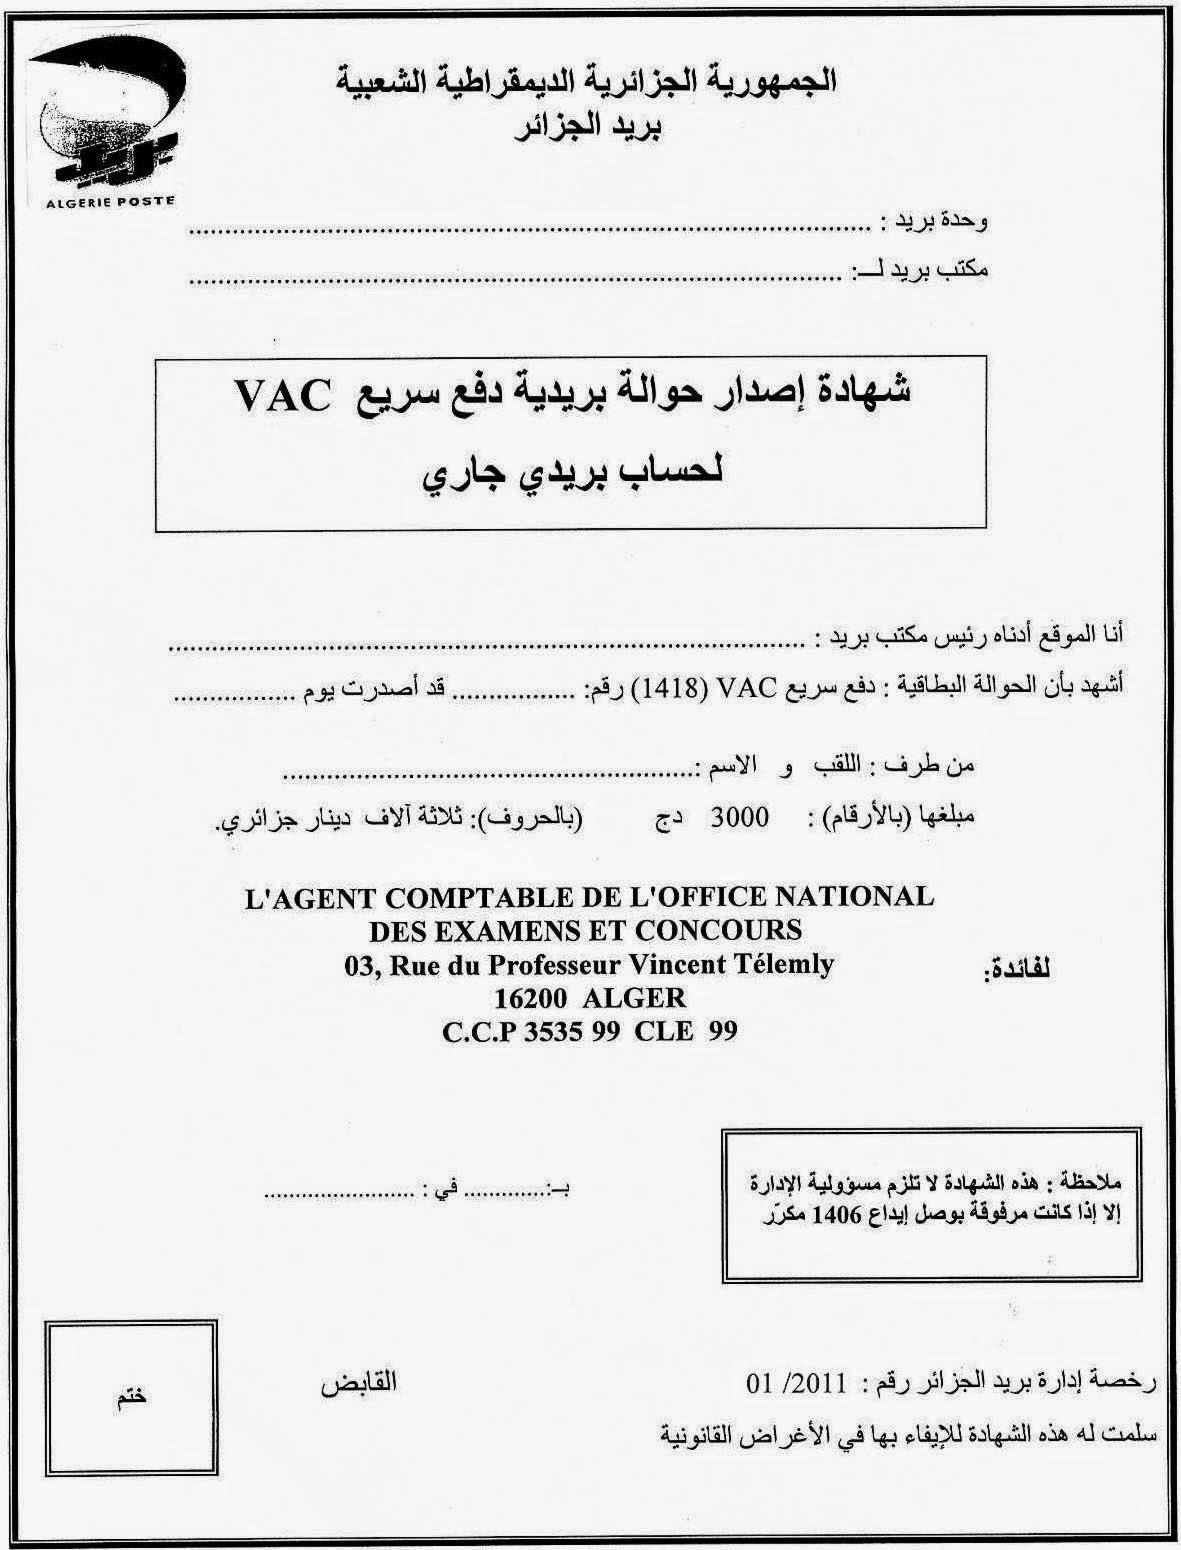 حوالة: للأحرار للبكالوريا و شهادة جامعية البريد الجزائري